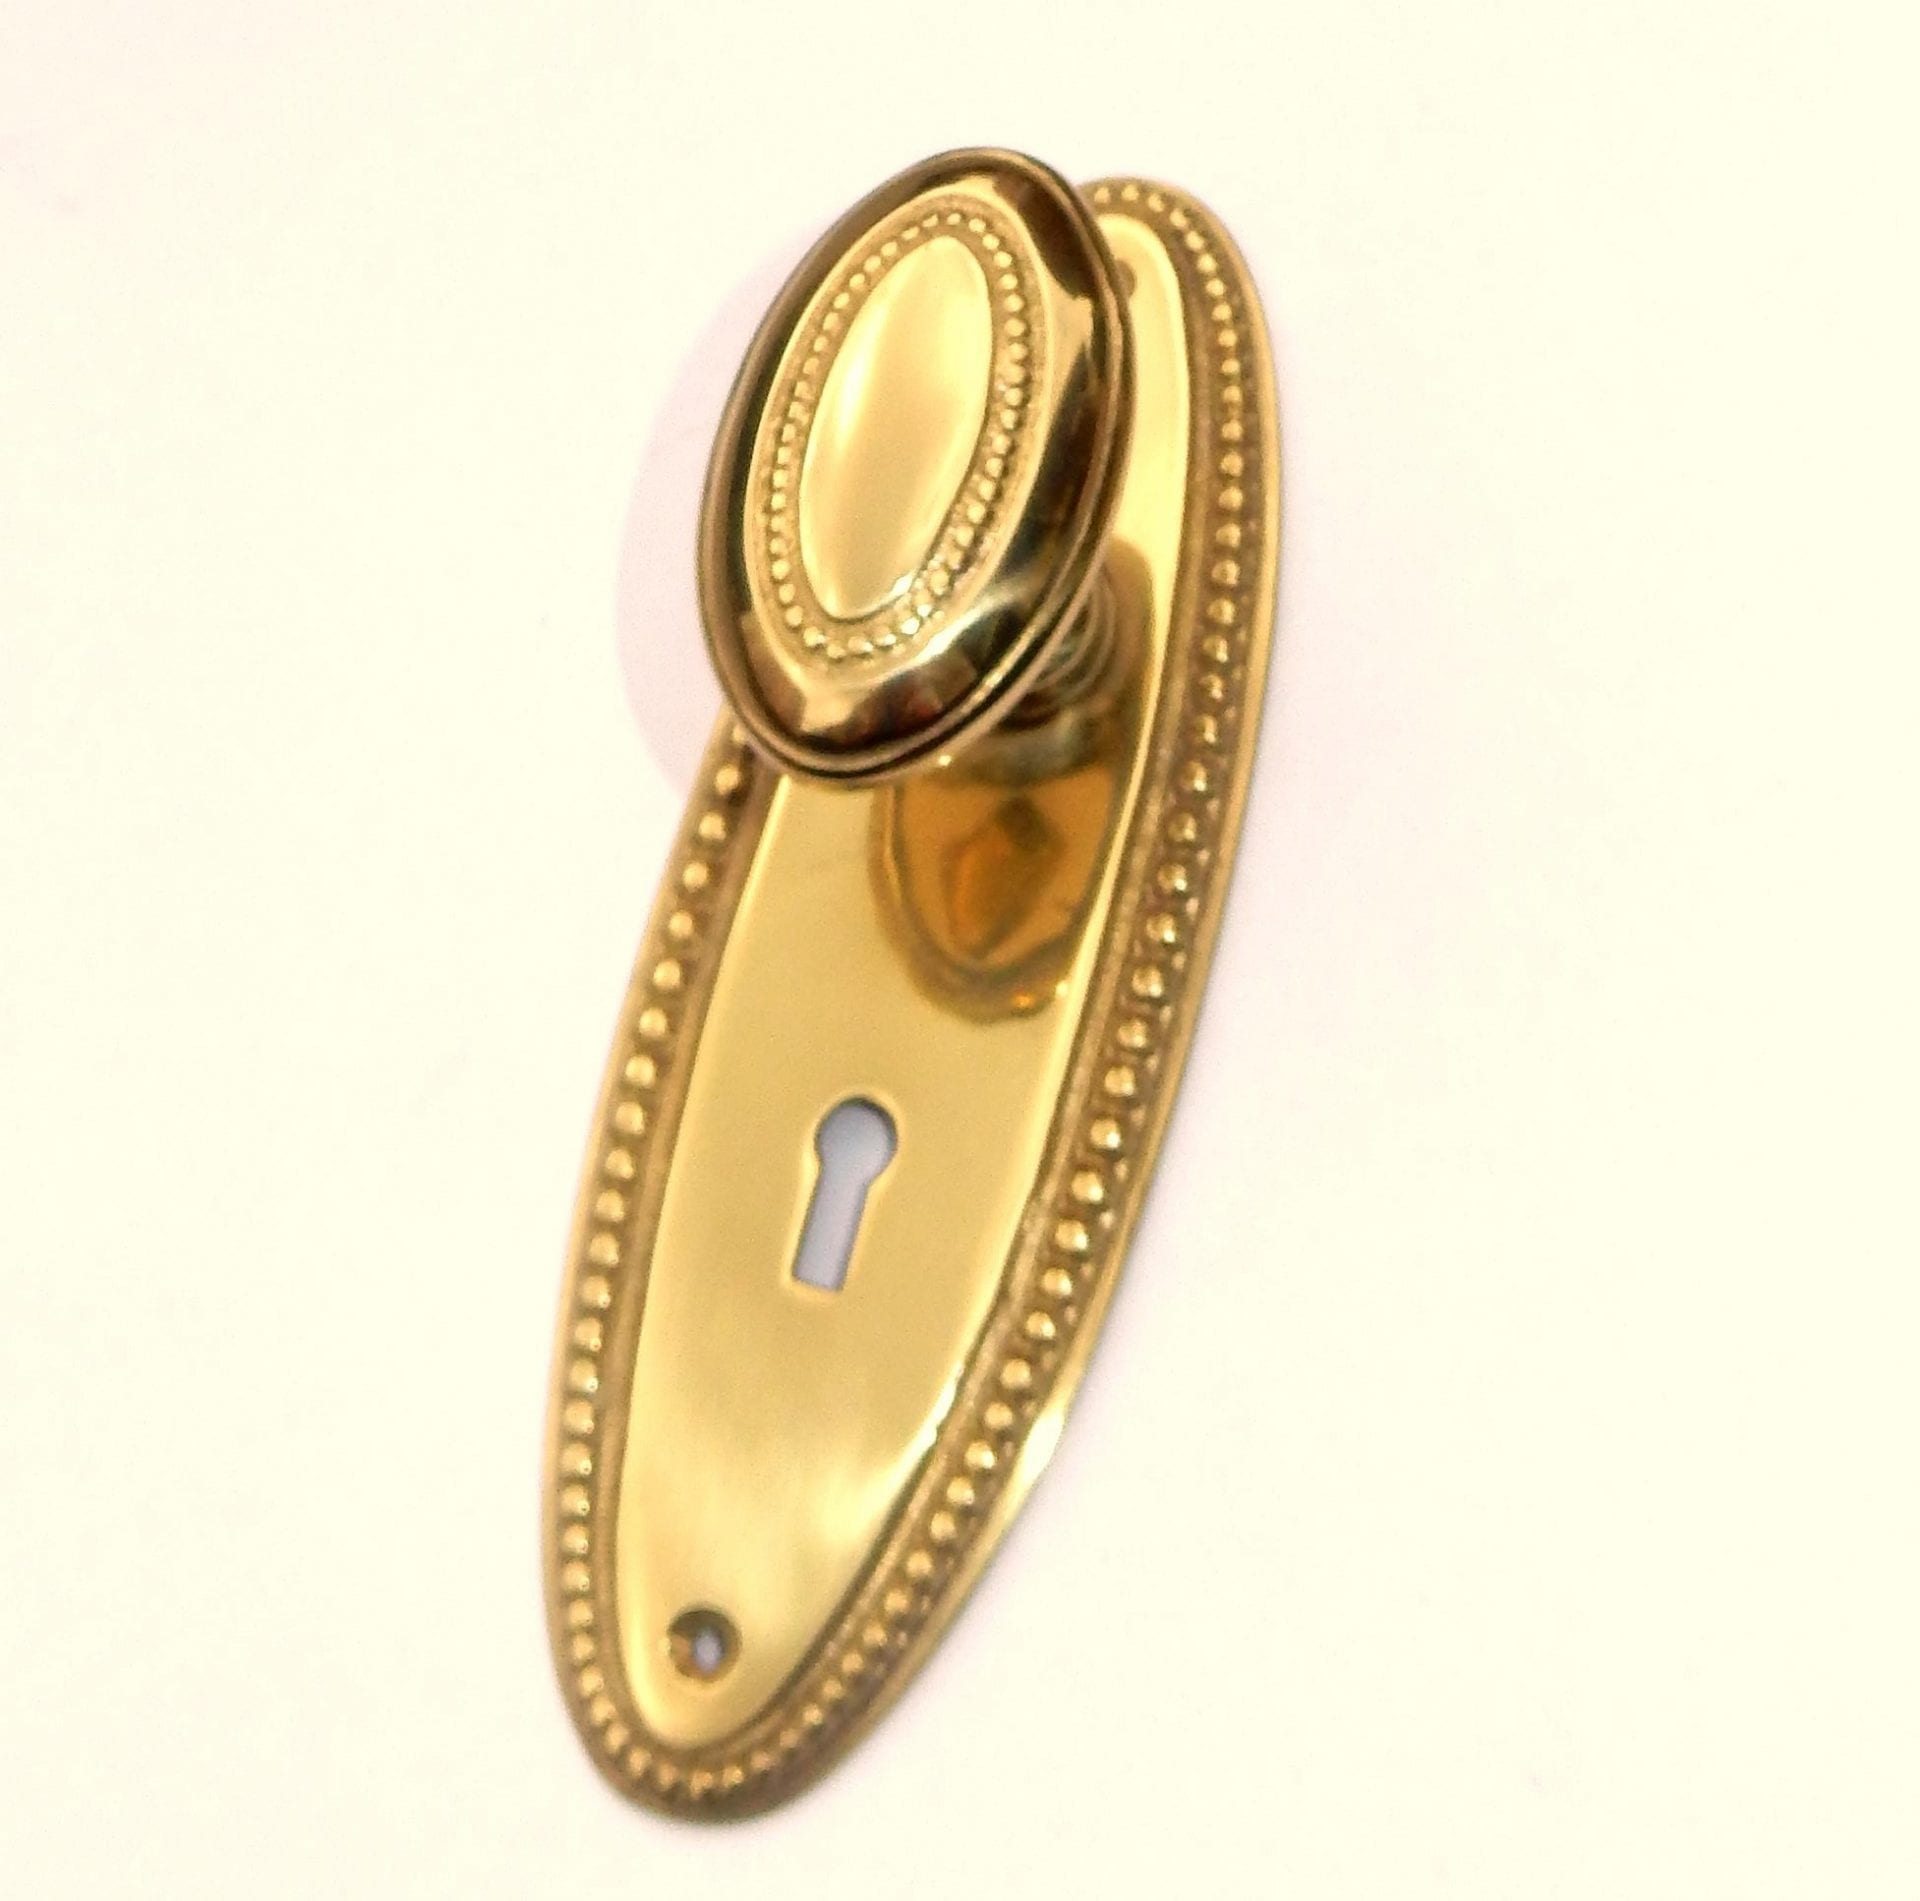 C269 - Oval Door Knob : Optimum Brasses